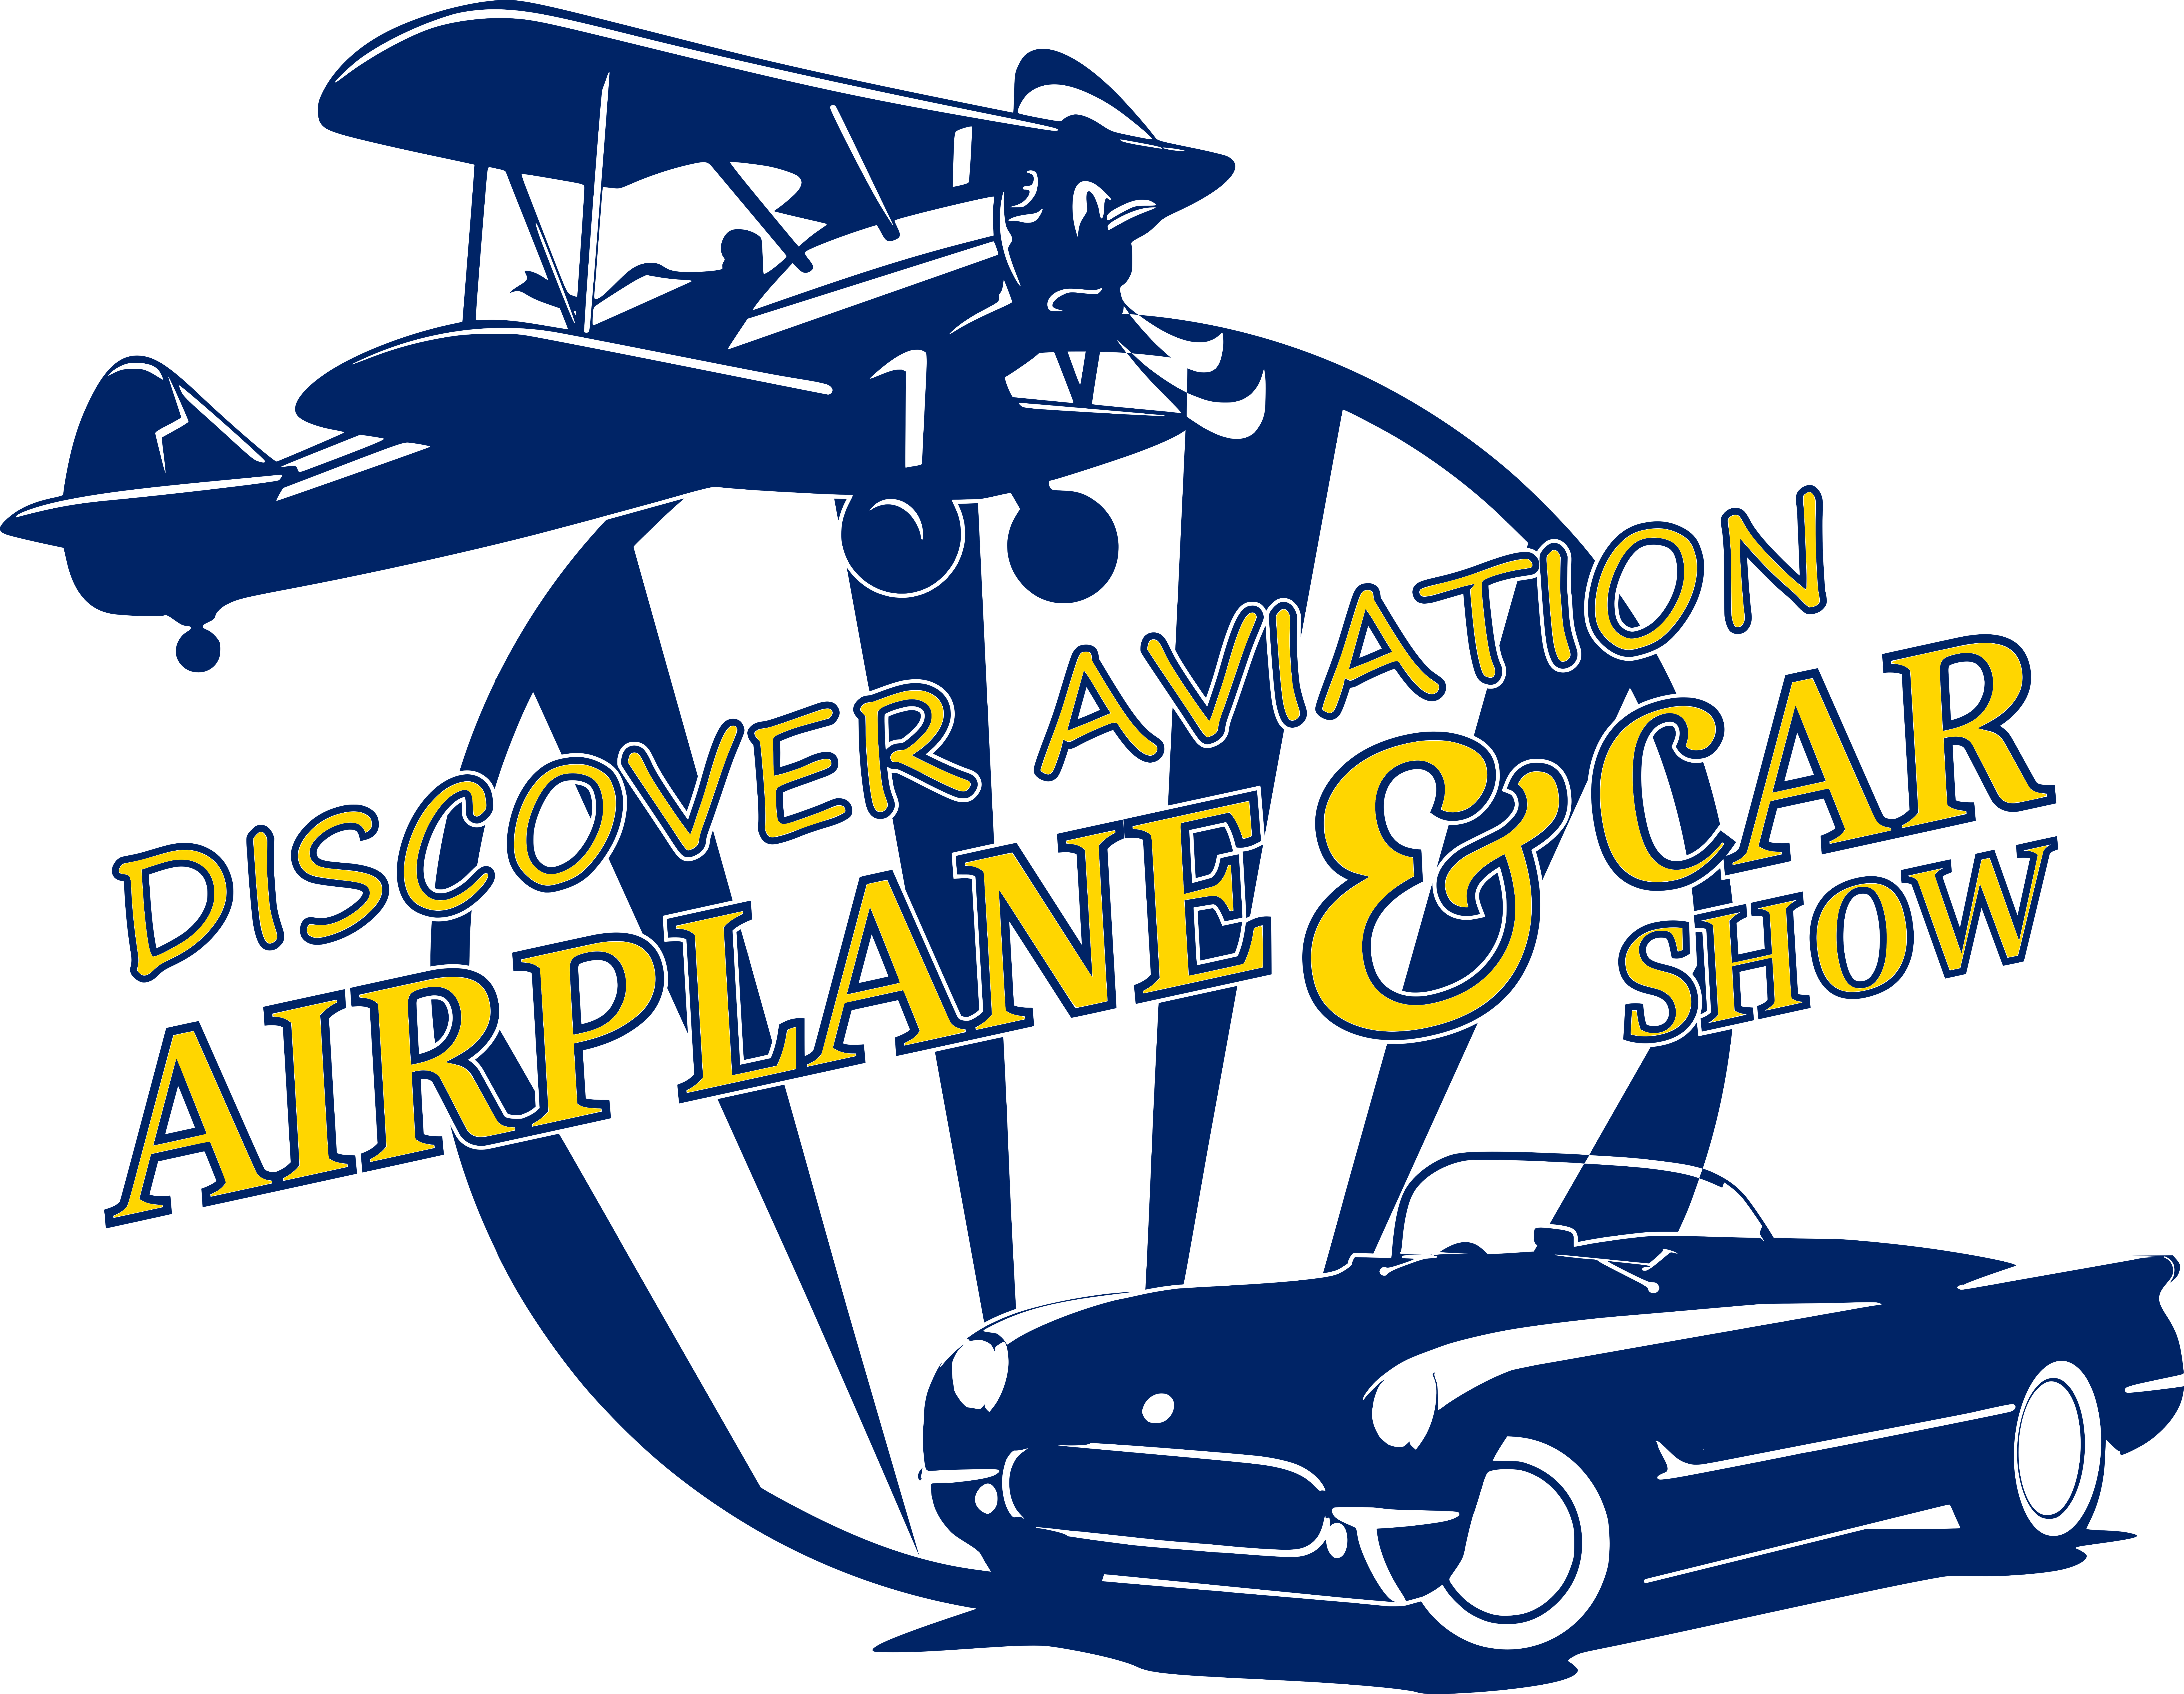 Discover Aviation Airplane & Car Show